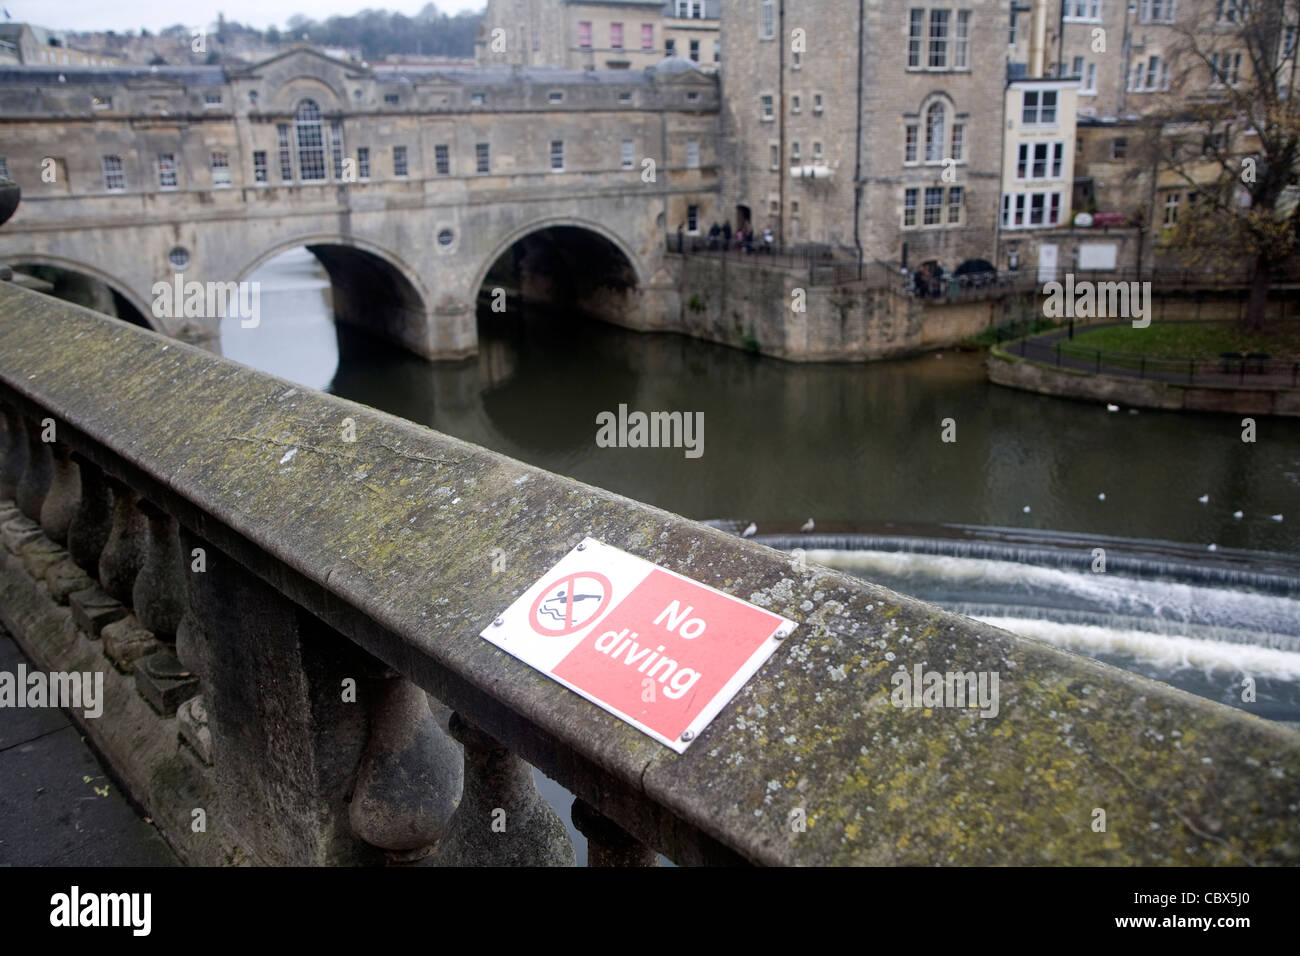 Aucun signe de plongée, Pulteney Bridge sur la rivière Avon, Bath, Angleterre Banque D'Images